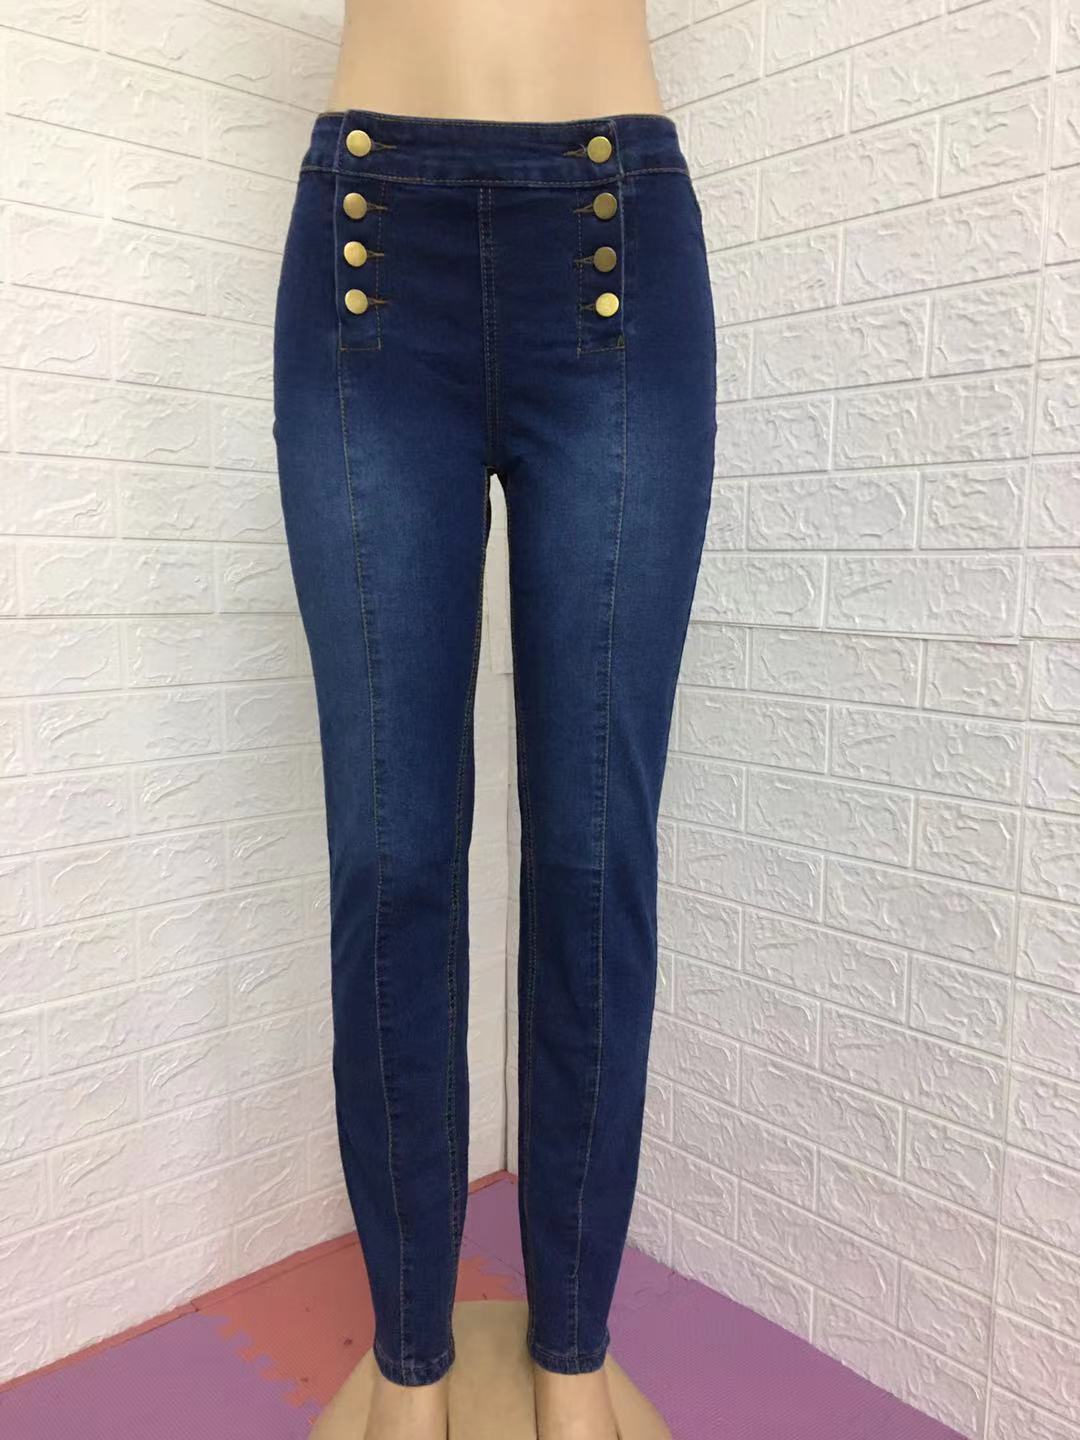 Sexy Slim Elastic Women Jeans